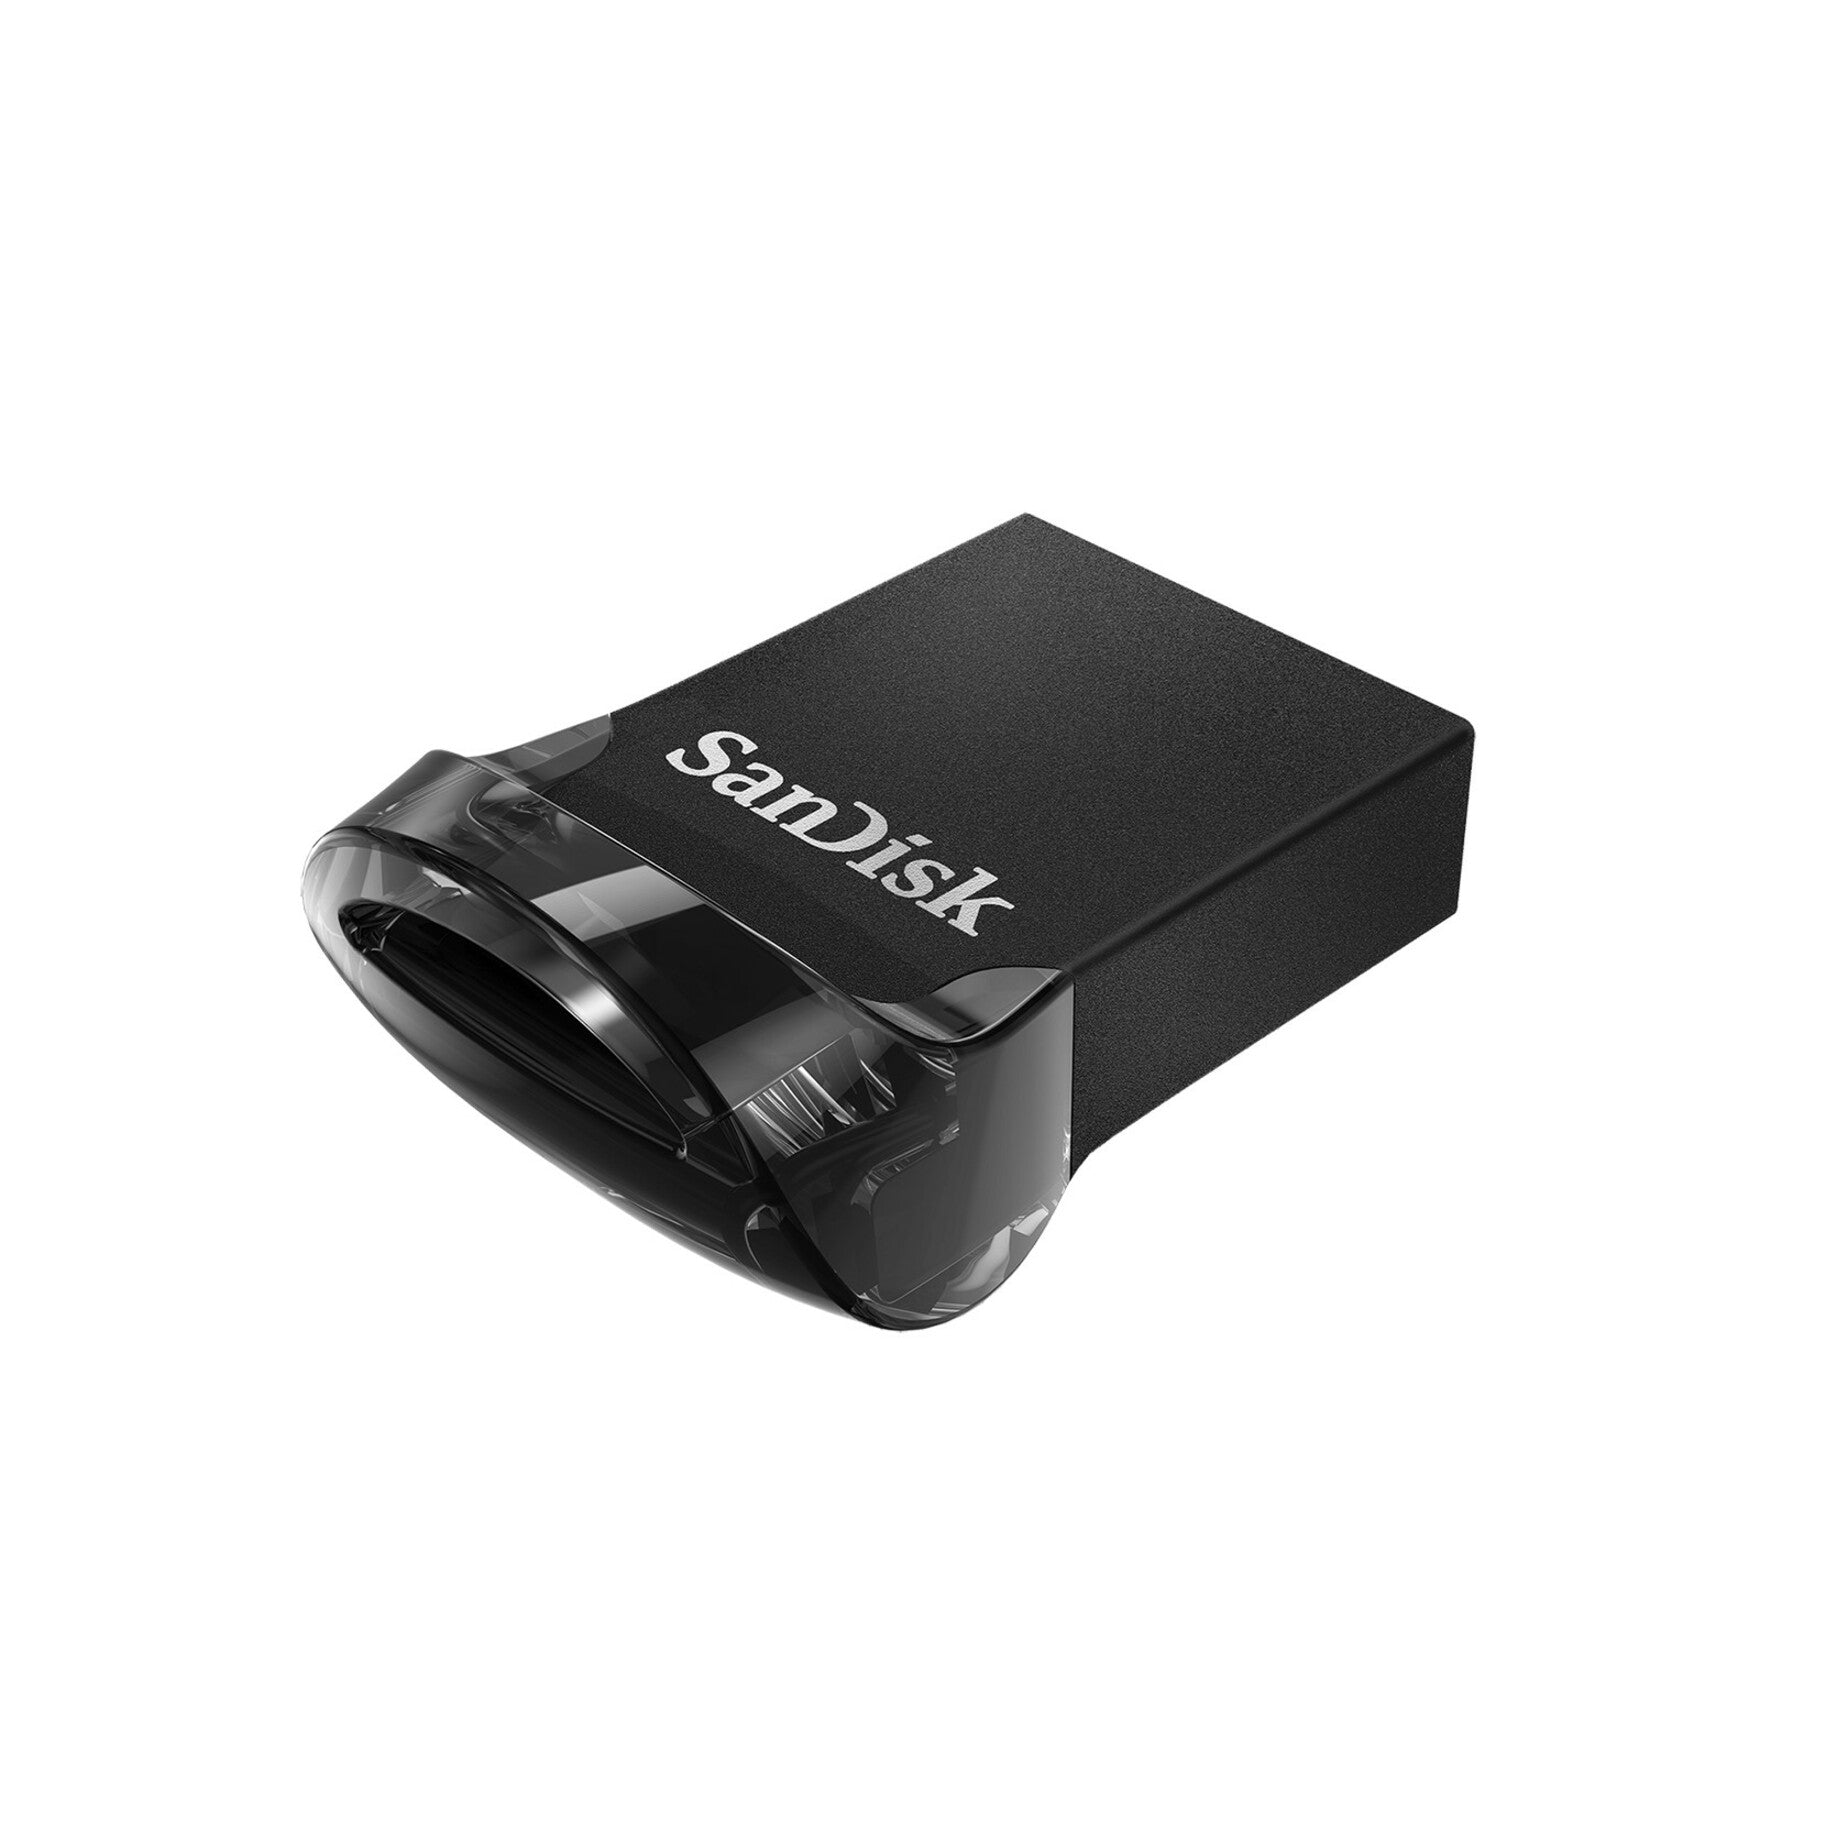 SanDisk SDCZ430-032G-A46 Ultra Fit USB 3.1 Flash Drive 32GB Transfert de Données à Haute Vitesse et Design Compact